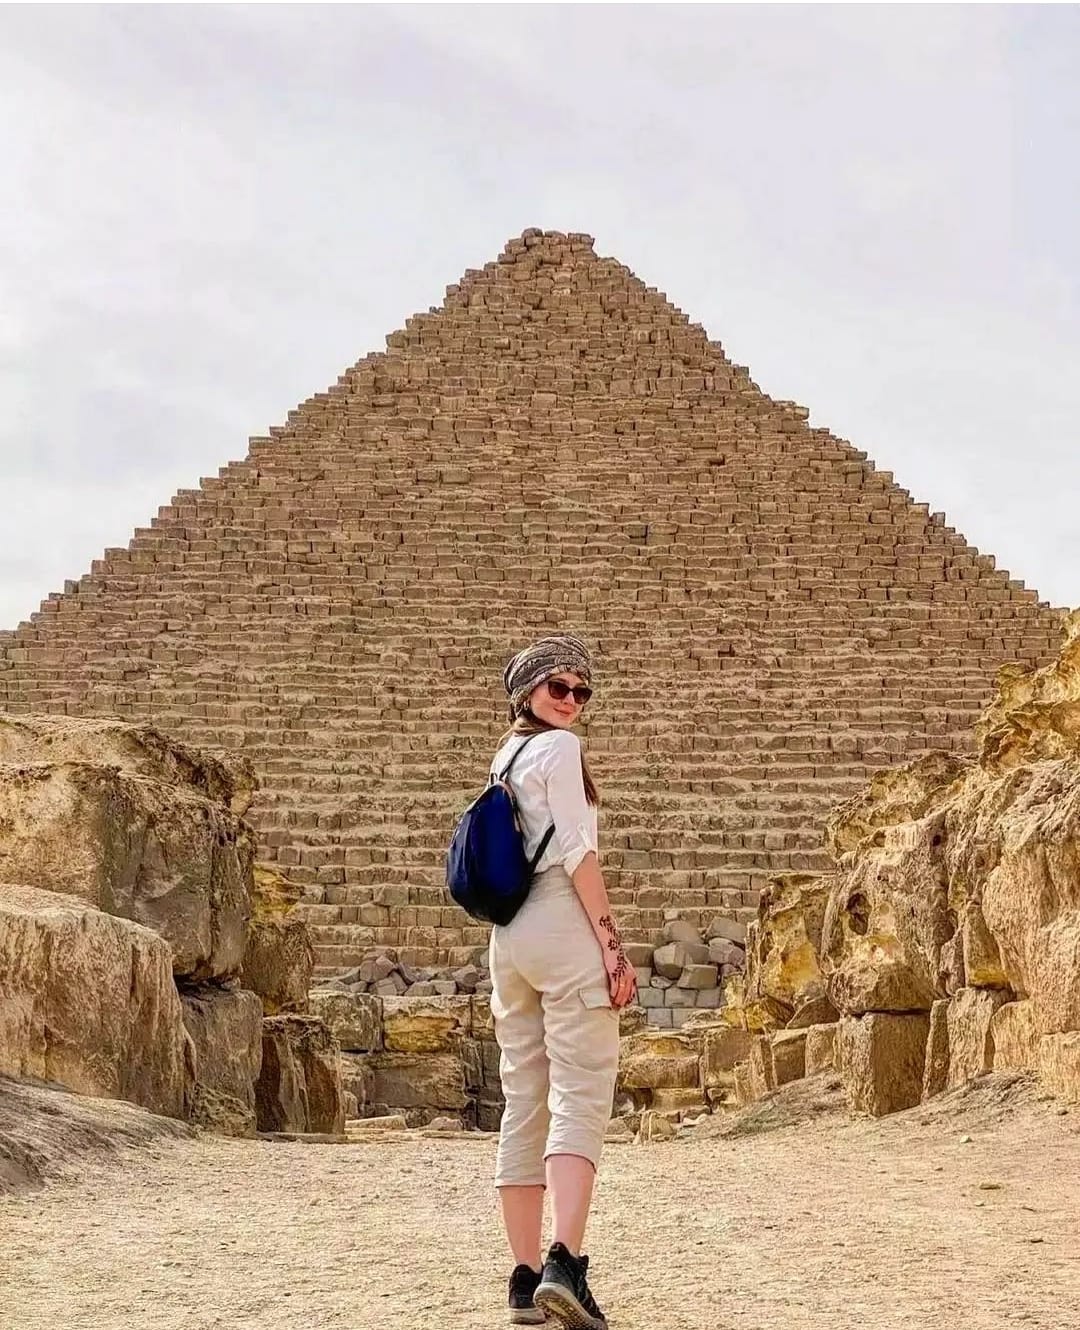 Tourist at Egypt Pyramids